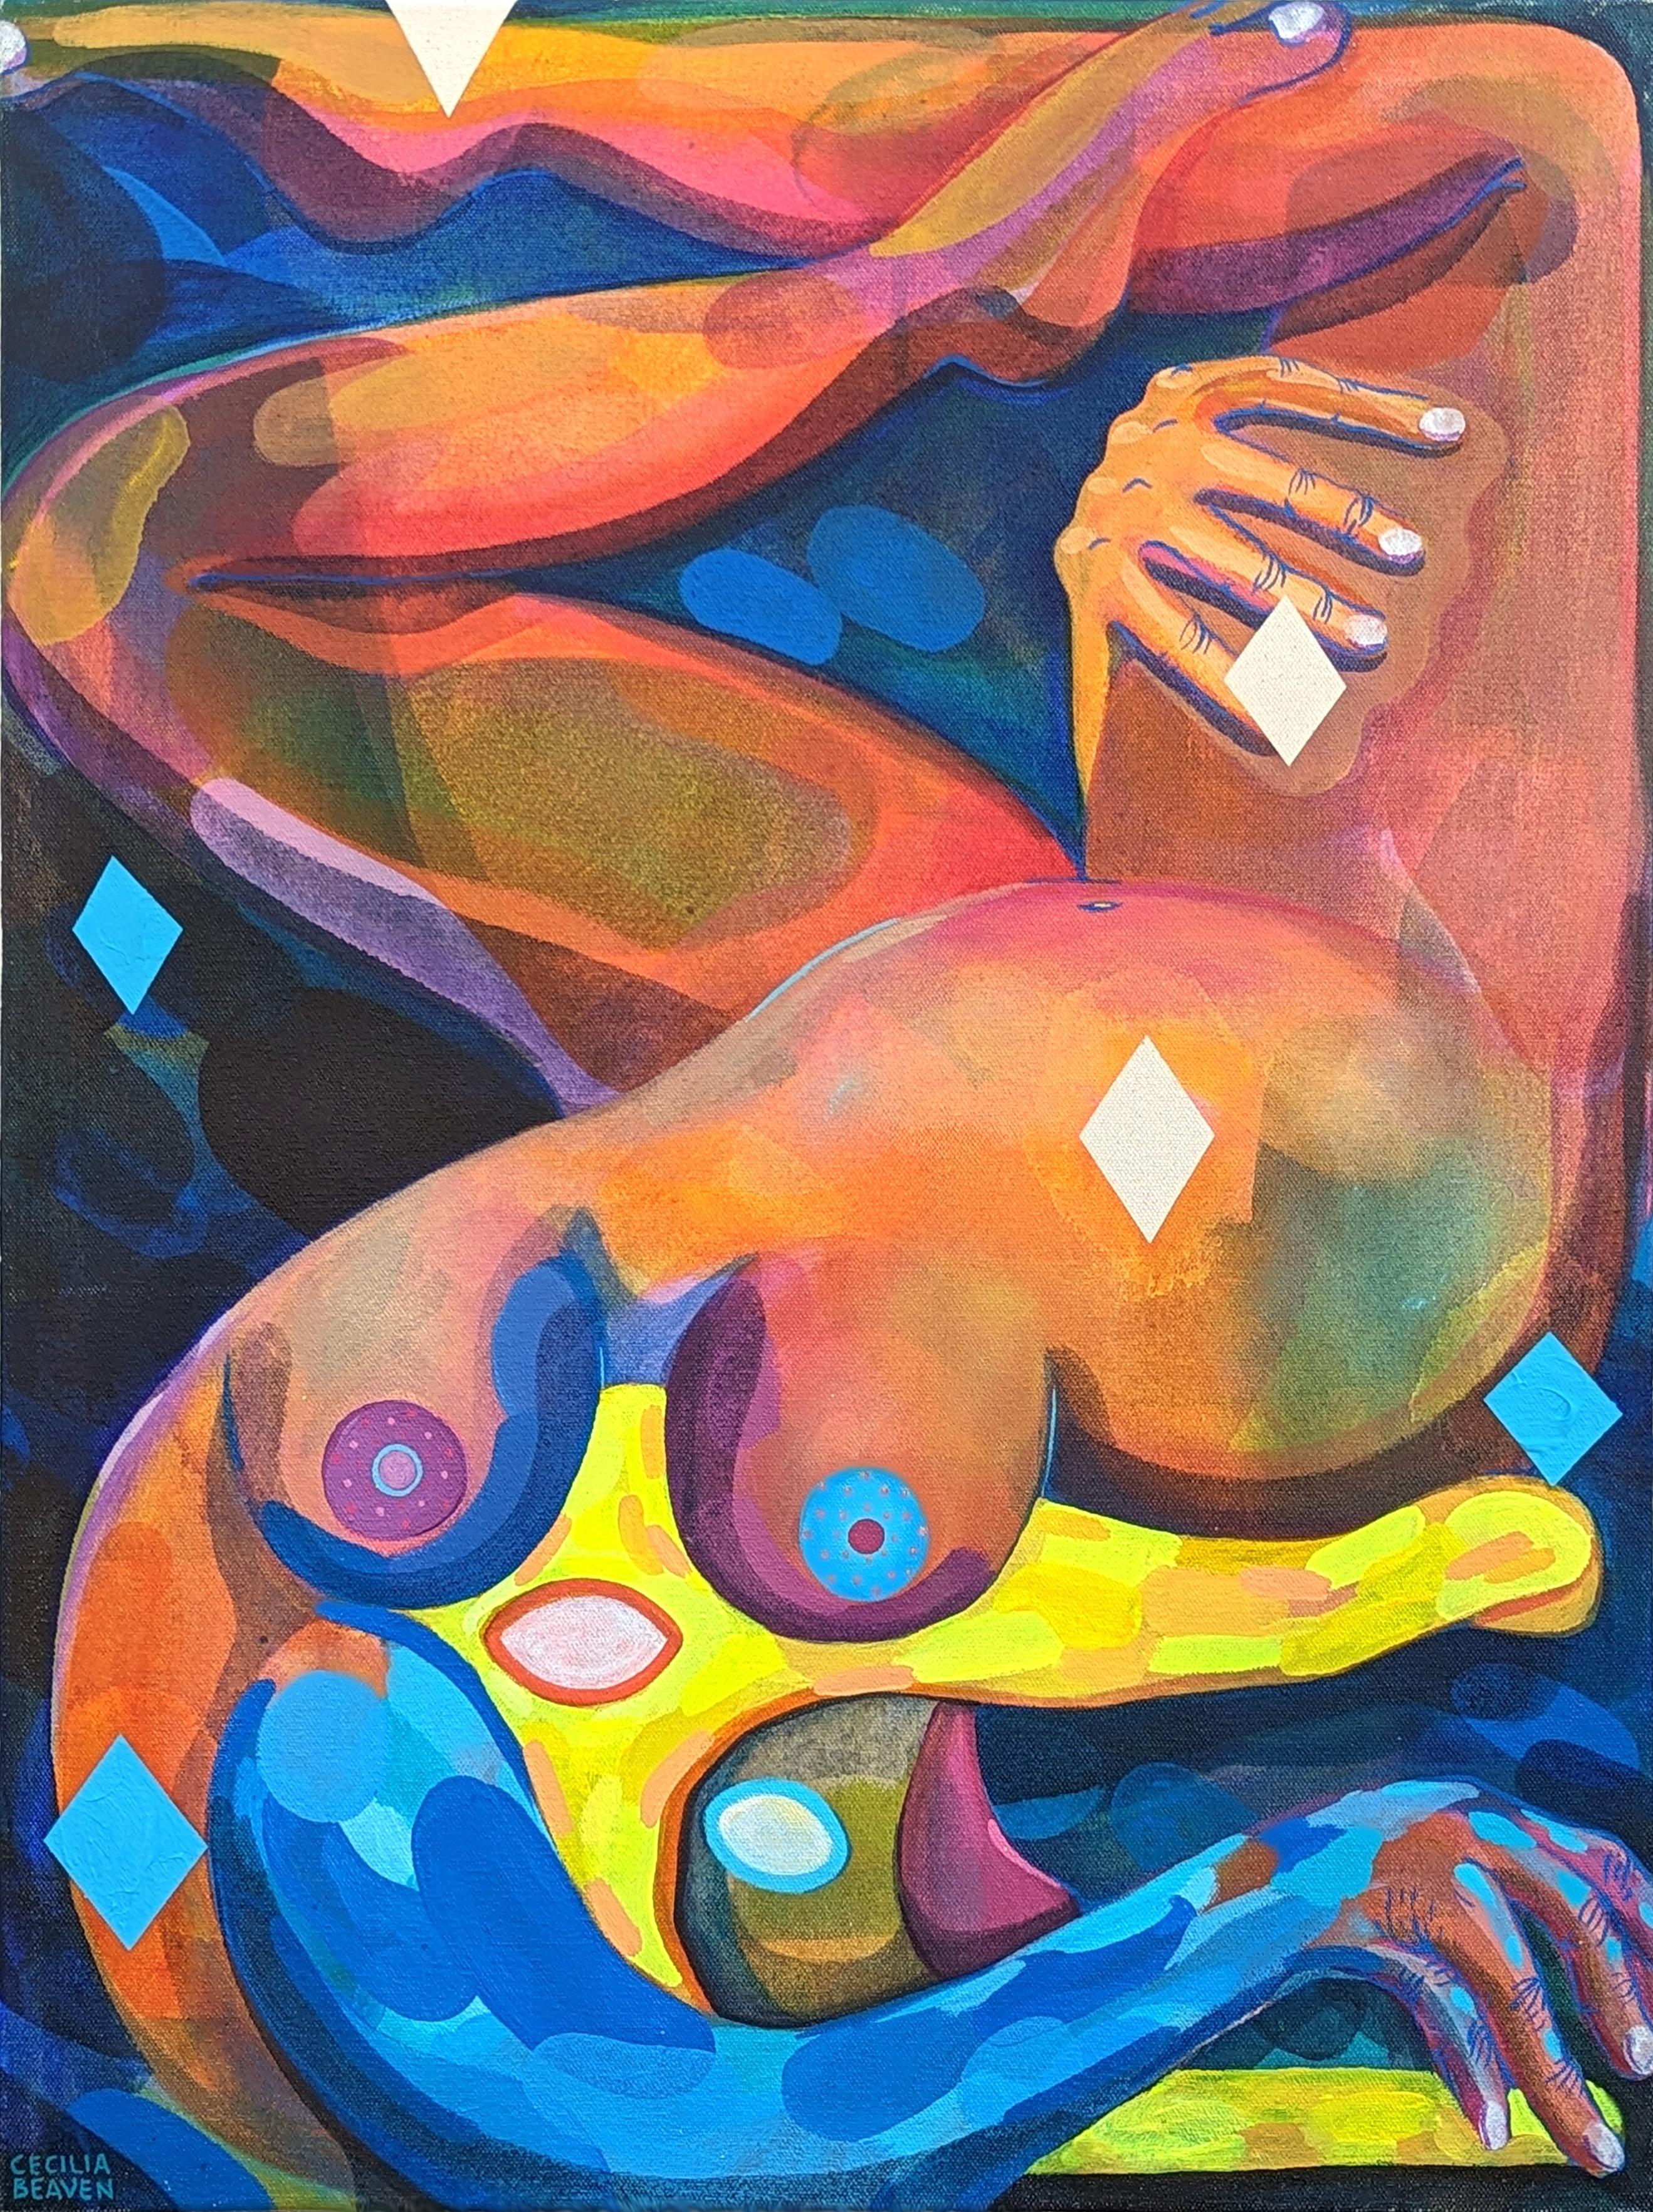 Figurative Painting Cecilia Beaven - Peinture abstraite contemporaine de figure biomorphique en alligator aux tons orange et bleu